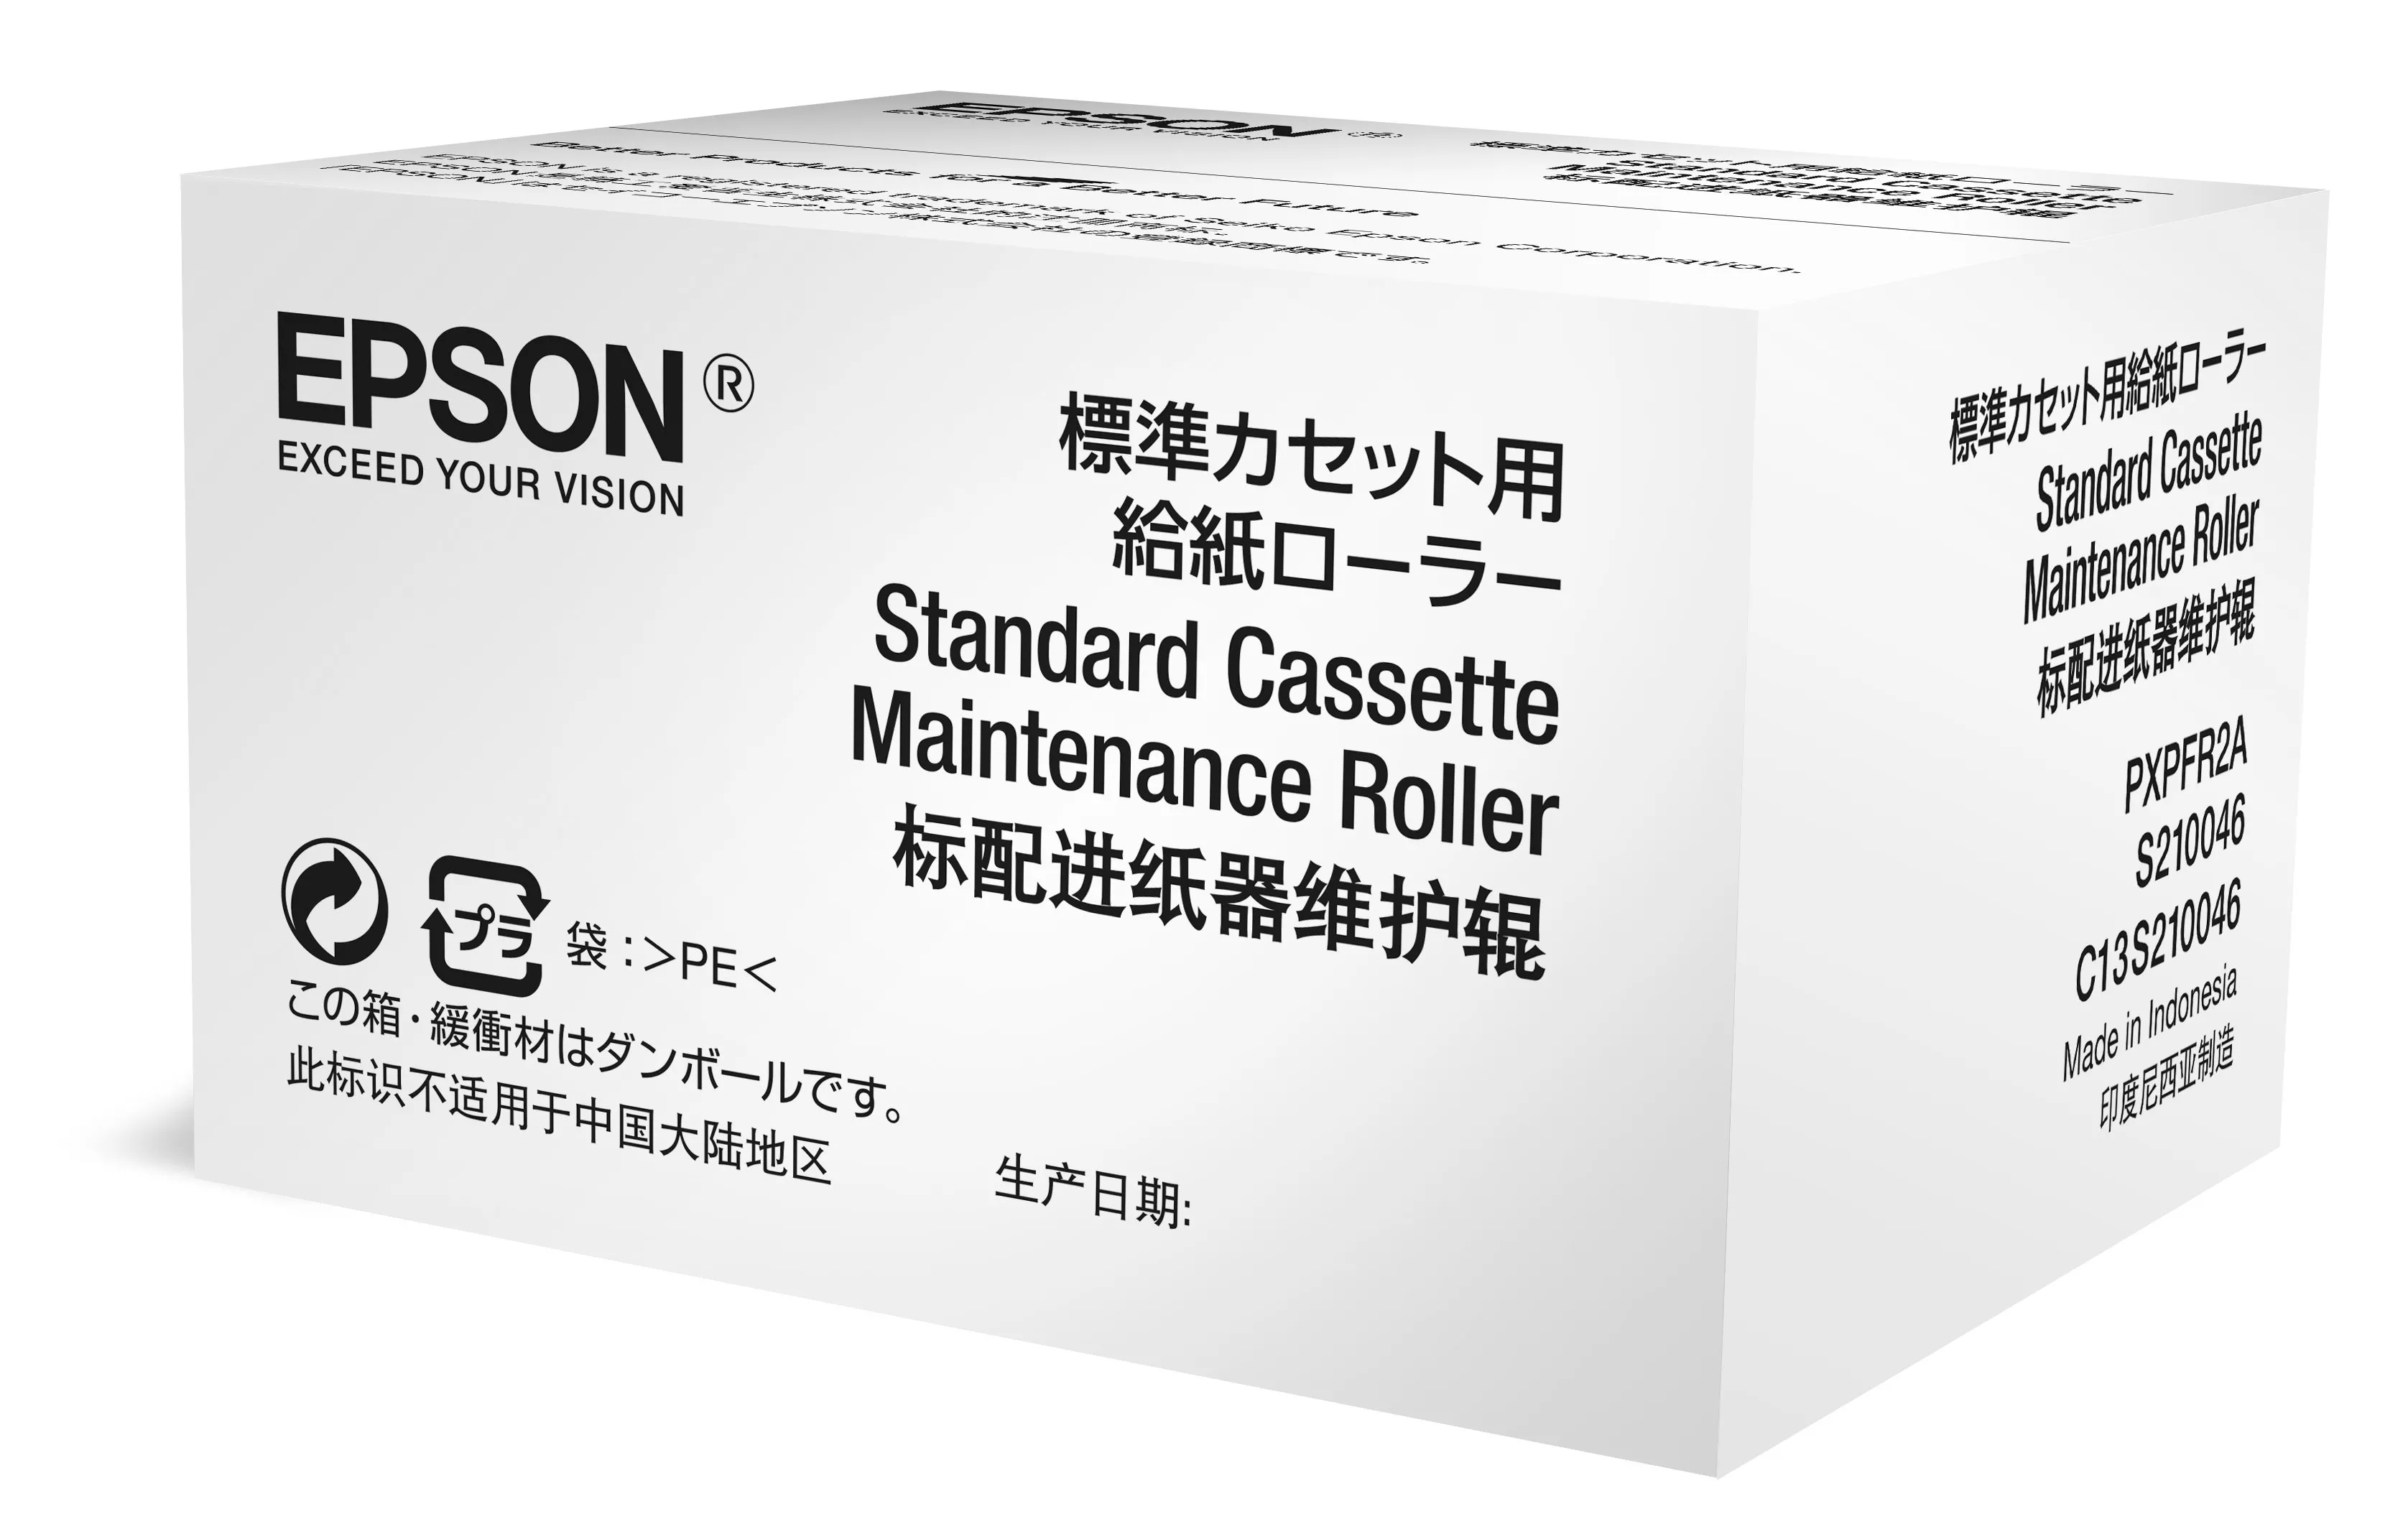 Achat Epson Optional Cassette Maintenance Roller au meilleur prix